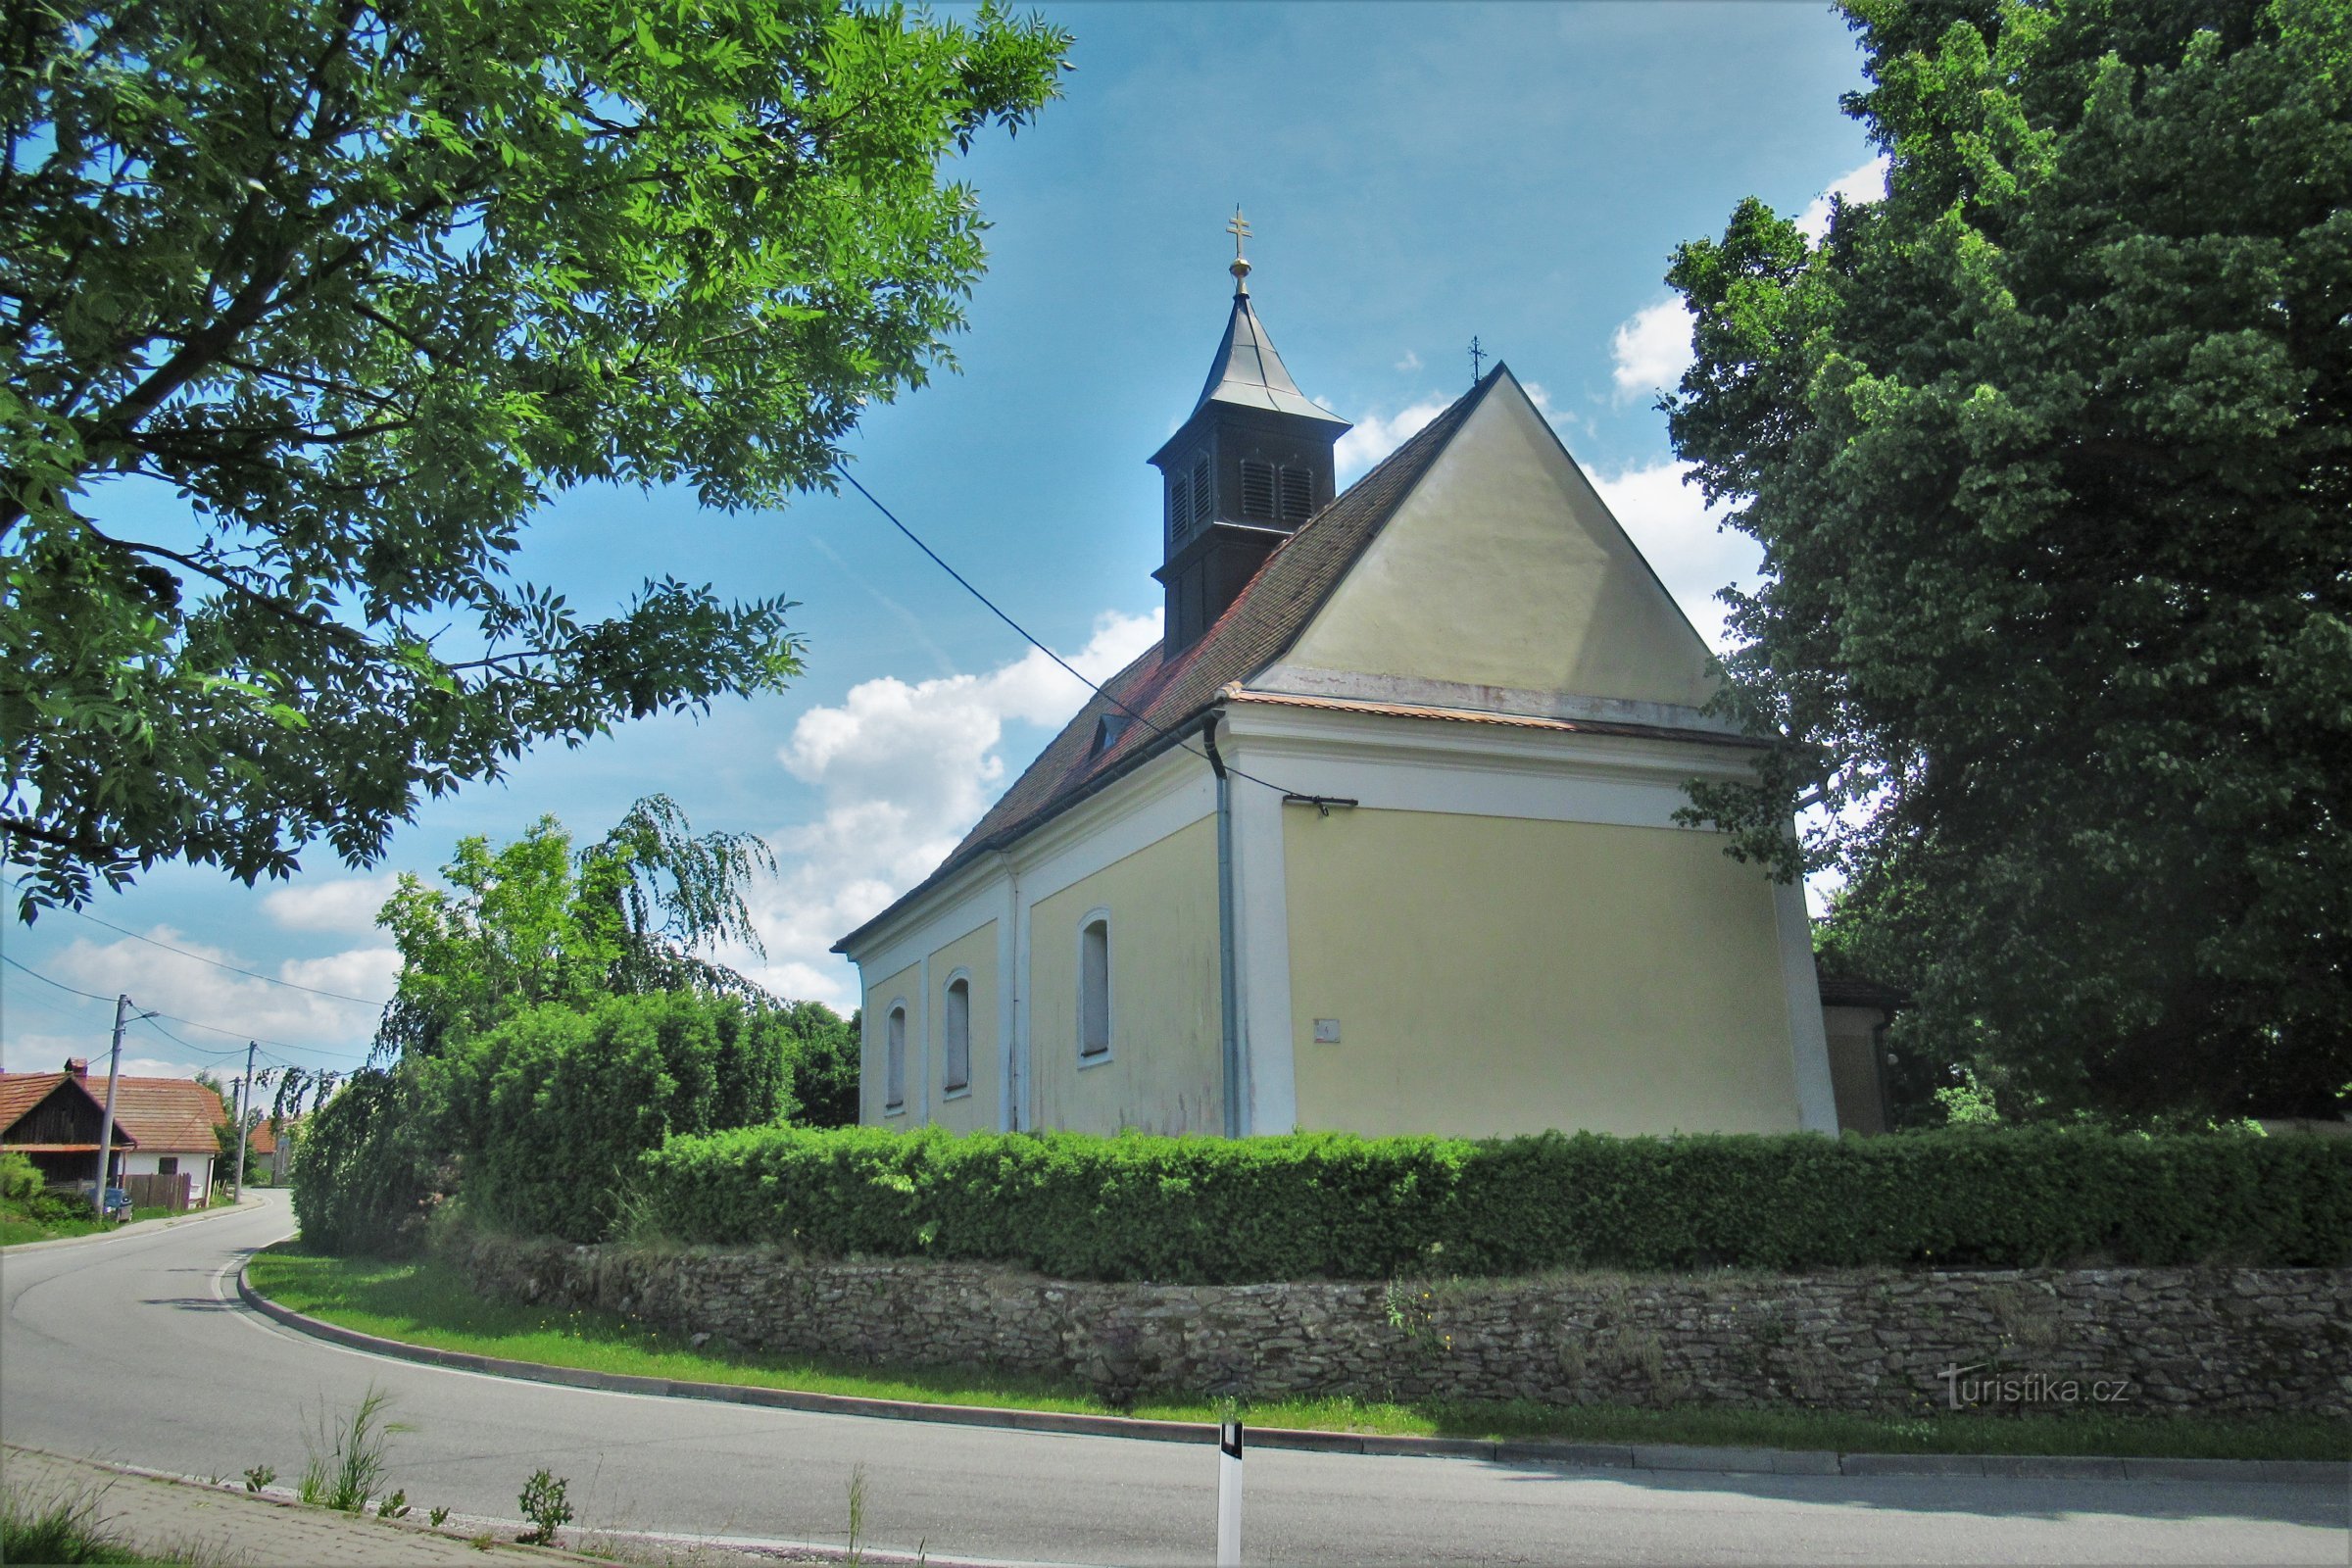 Немчице - церква св. Миколая